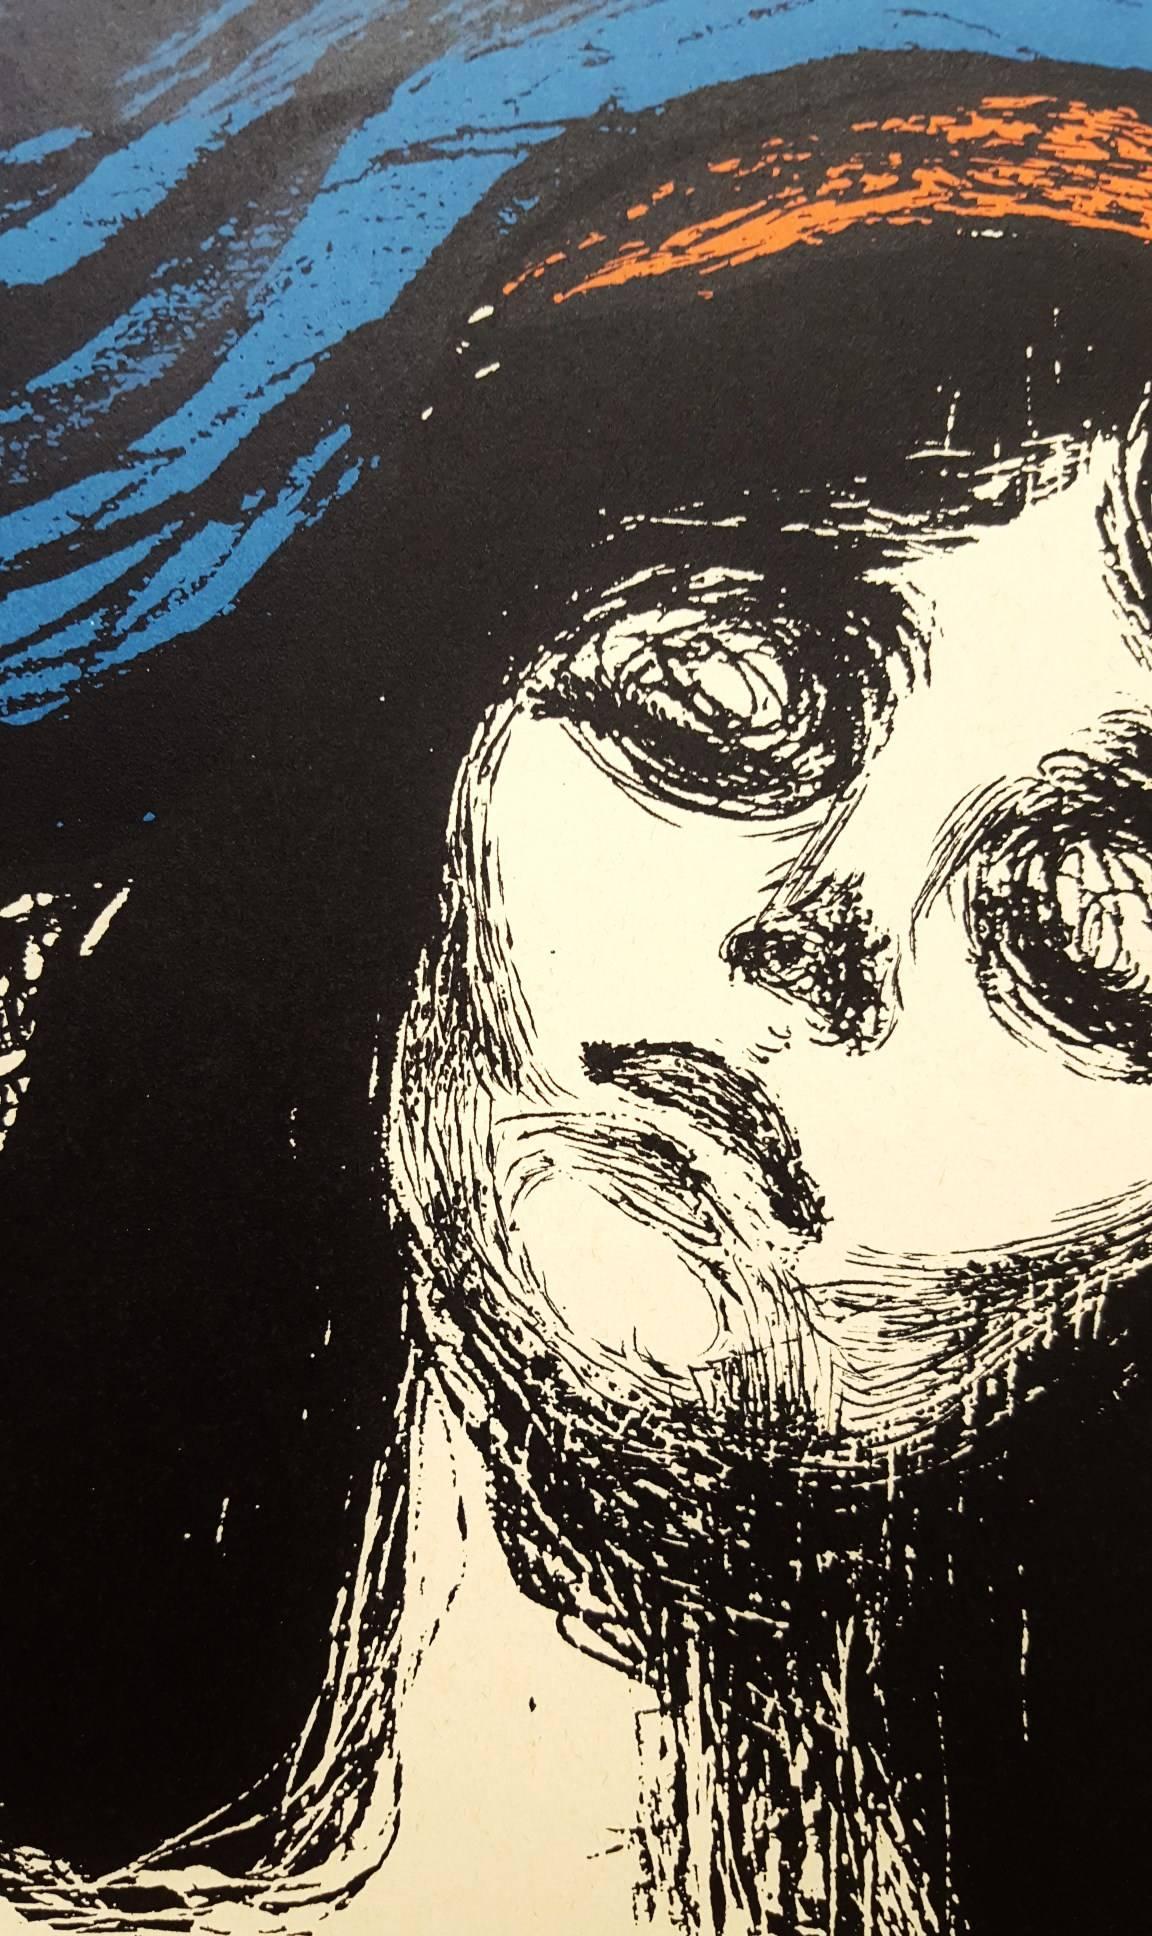 An original lithograph exhibition poster after Norwegian artist Edvard Munch (1863-1944) titled "Madonna - Edvard Munch: the Graphic Work", 1973. The lithograph printed onto this exhibition poster is "Madonna" after the original